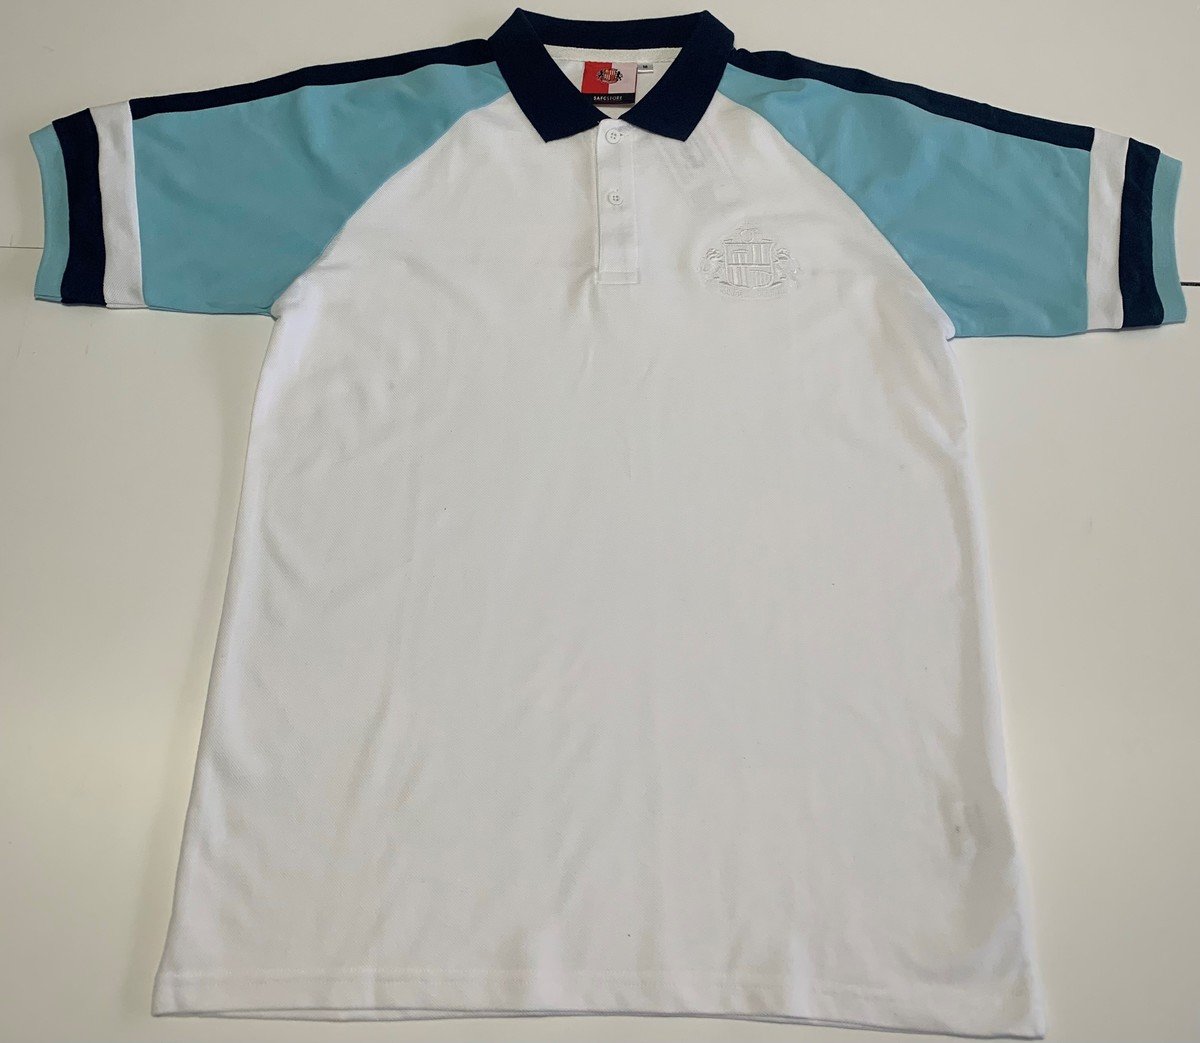 SAFC Marsh Polo Shirt